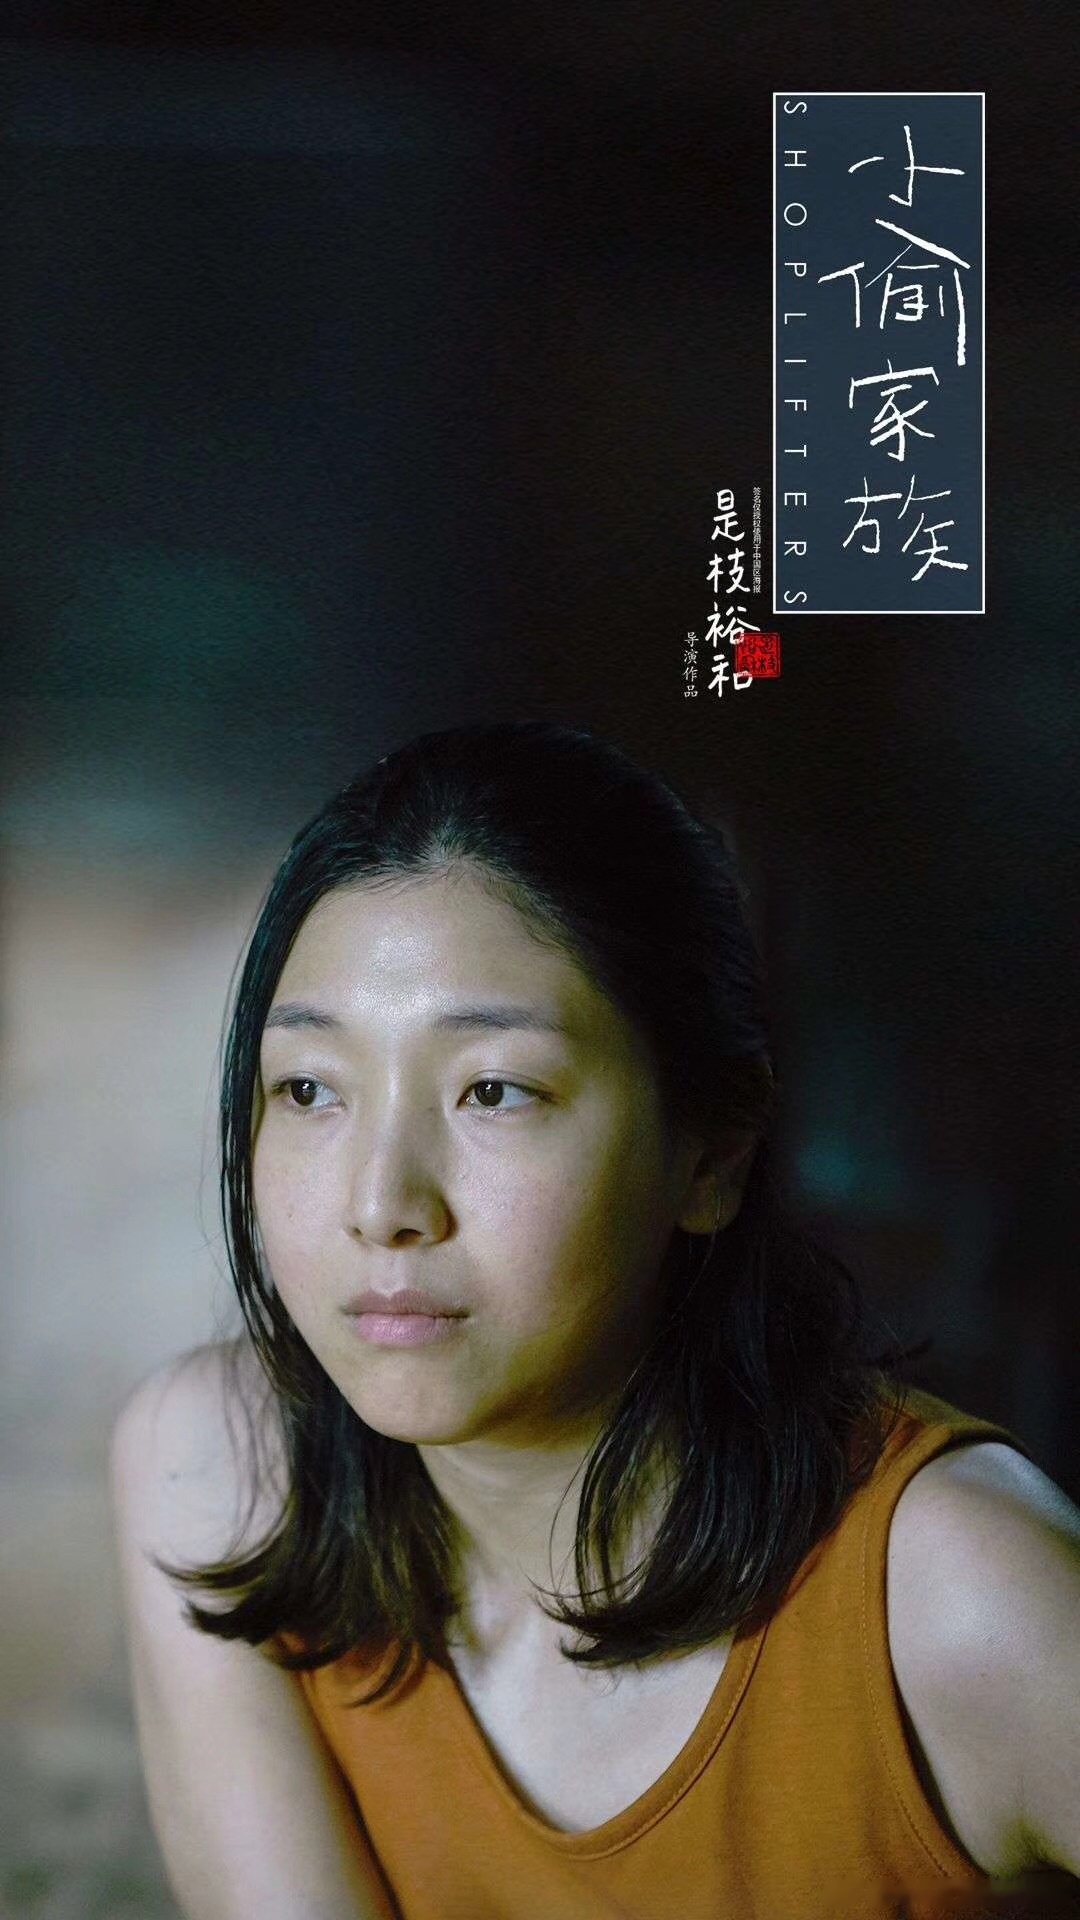 《小偷家族》中母亲的饰演者安藤樱,是日本公认的银幕缪斯,而且家世